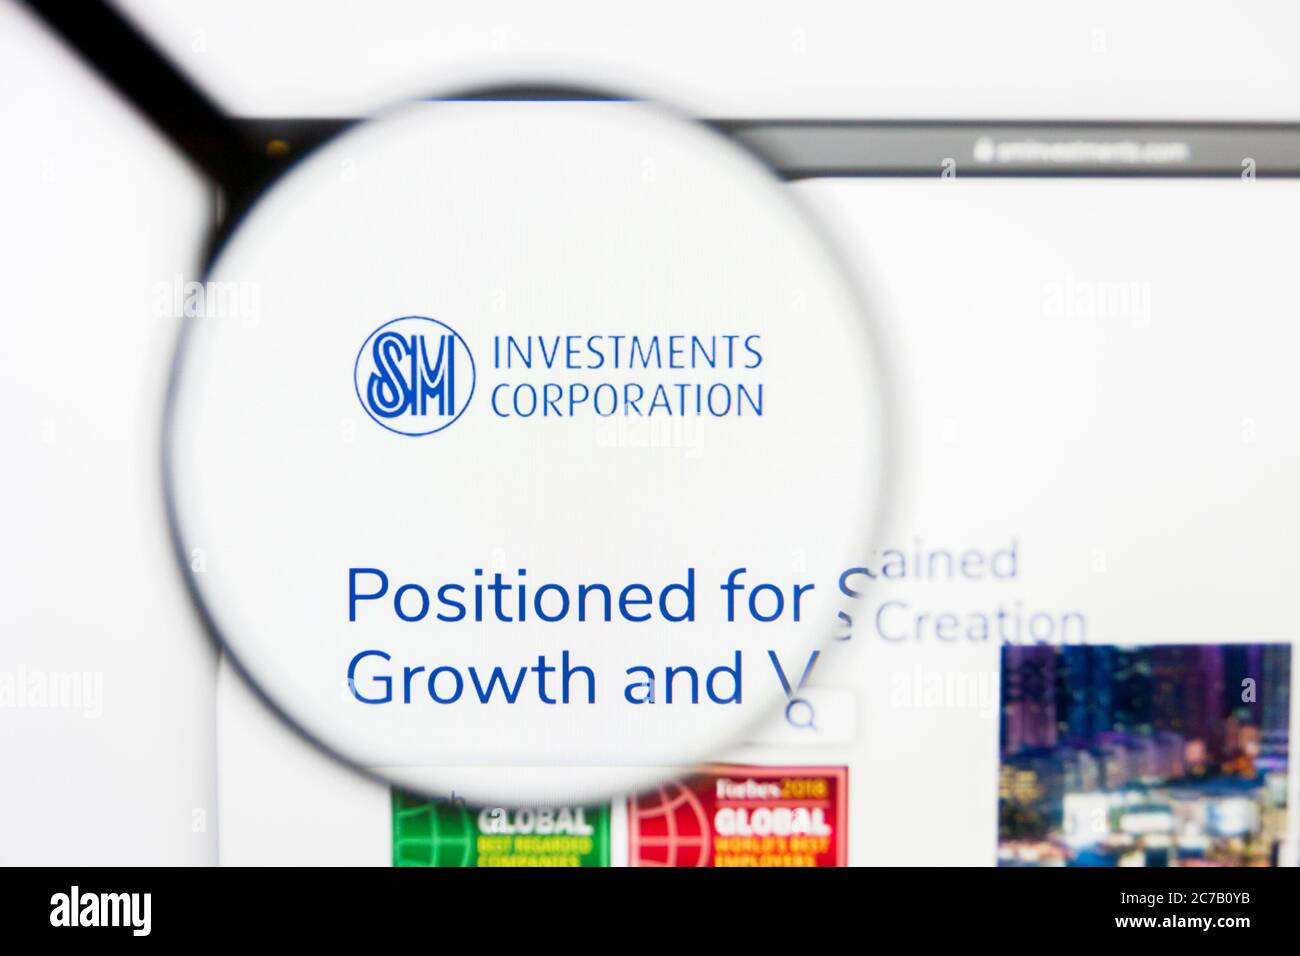 Los Angeles, California, USA - 10 Marzo 2019: Editoriale illustrativo, sito web SM Investments. Logo SM Investments visibile sullo schermo Foto Stock